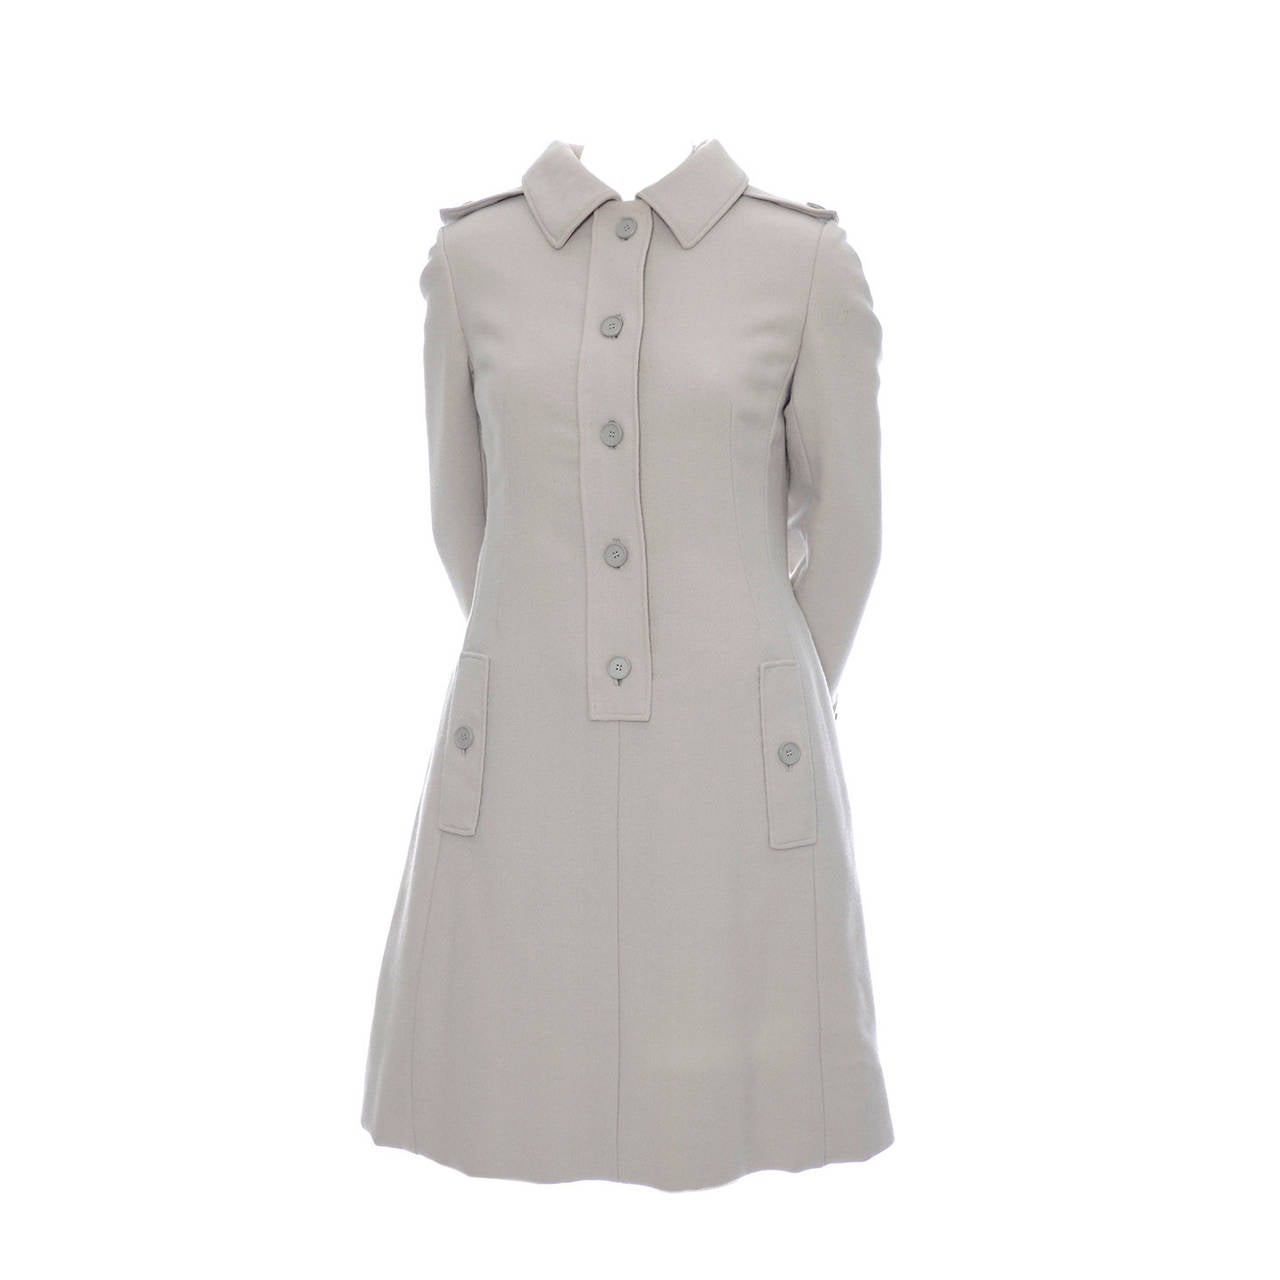 1960s Geoffrey Beene Vintage Coat Dress Saks Fifth Avenue Never Worn